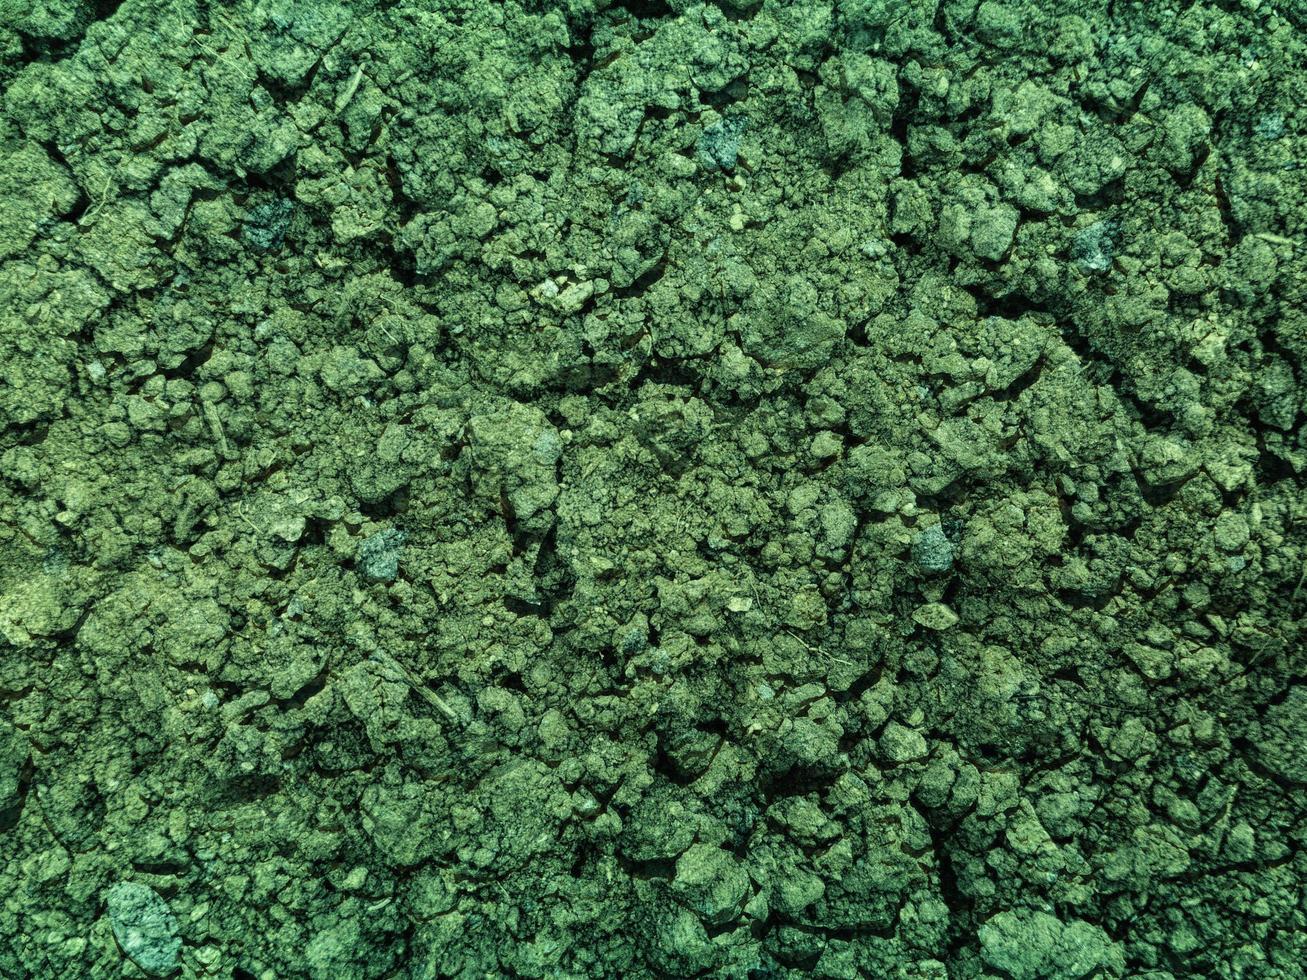 grönt vatten mark konsistens foto